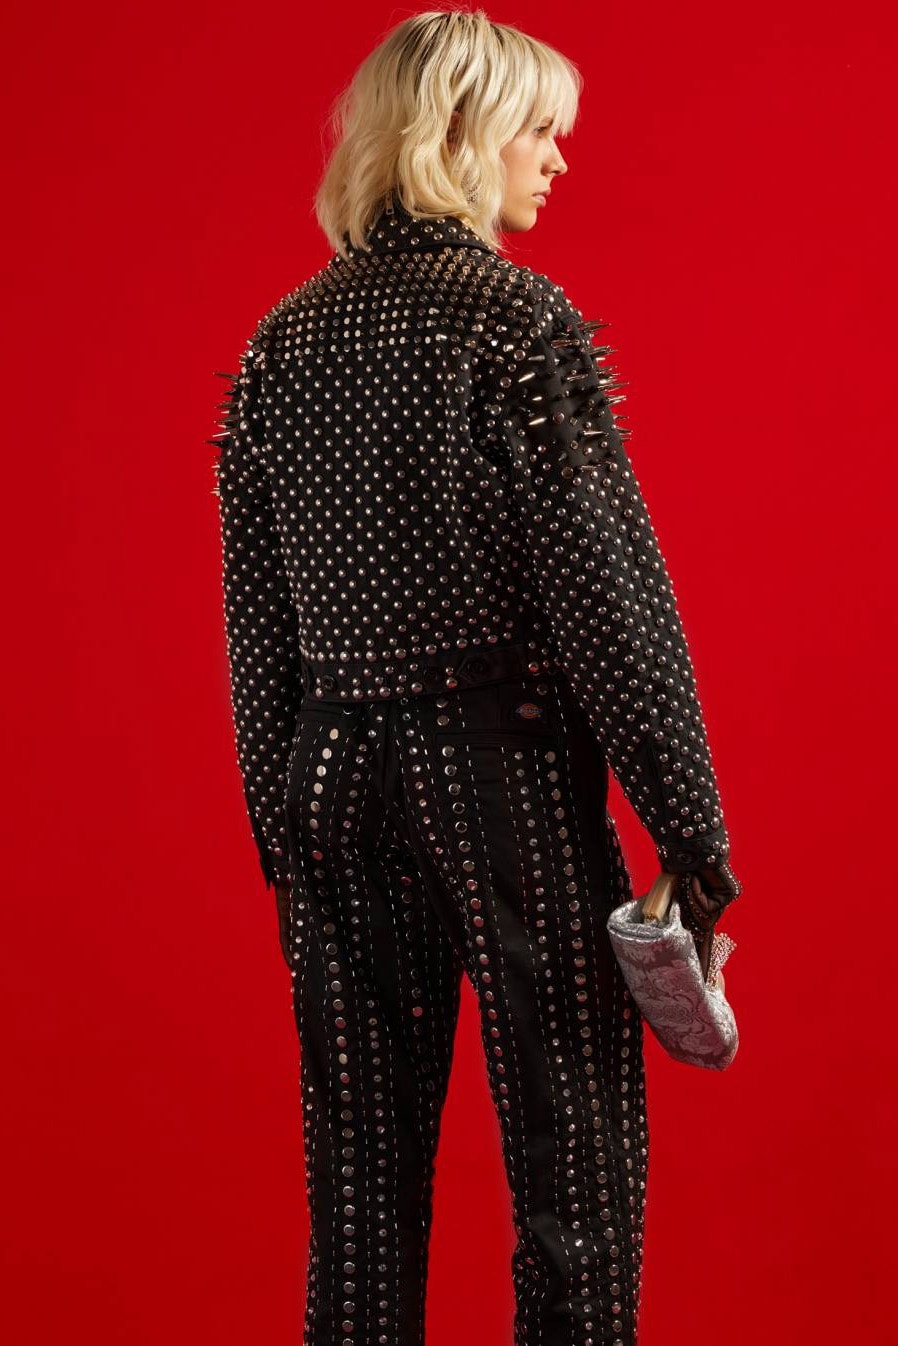 グッチのオンラインコンセプトショップ ヴォールトがディッキーズとのカプセルコレクションを発表 Dickies Gucci Vault Exclusive Collection Luxury Workwear Stud Grommet Eisenhower Jacket 874 Pant Bermuda Work Shirt Shorts